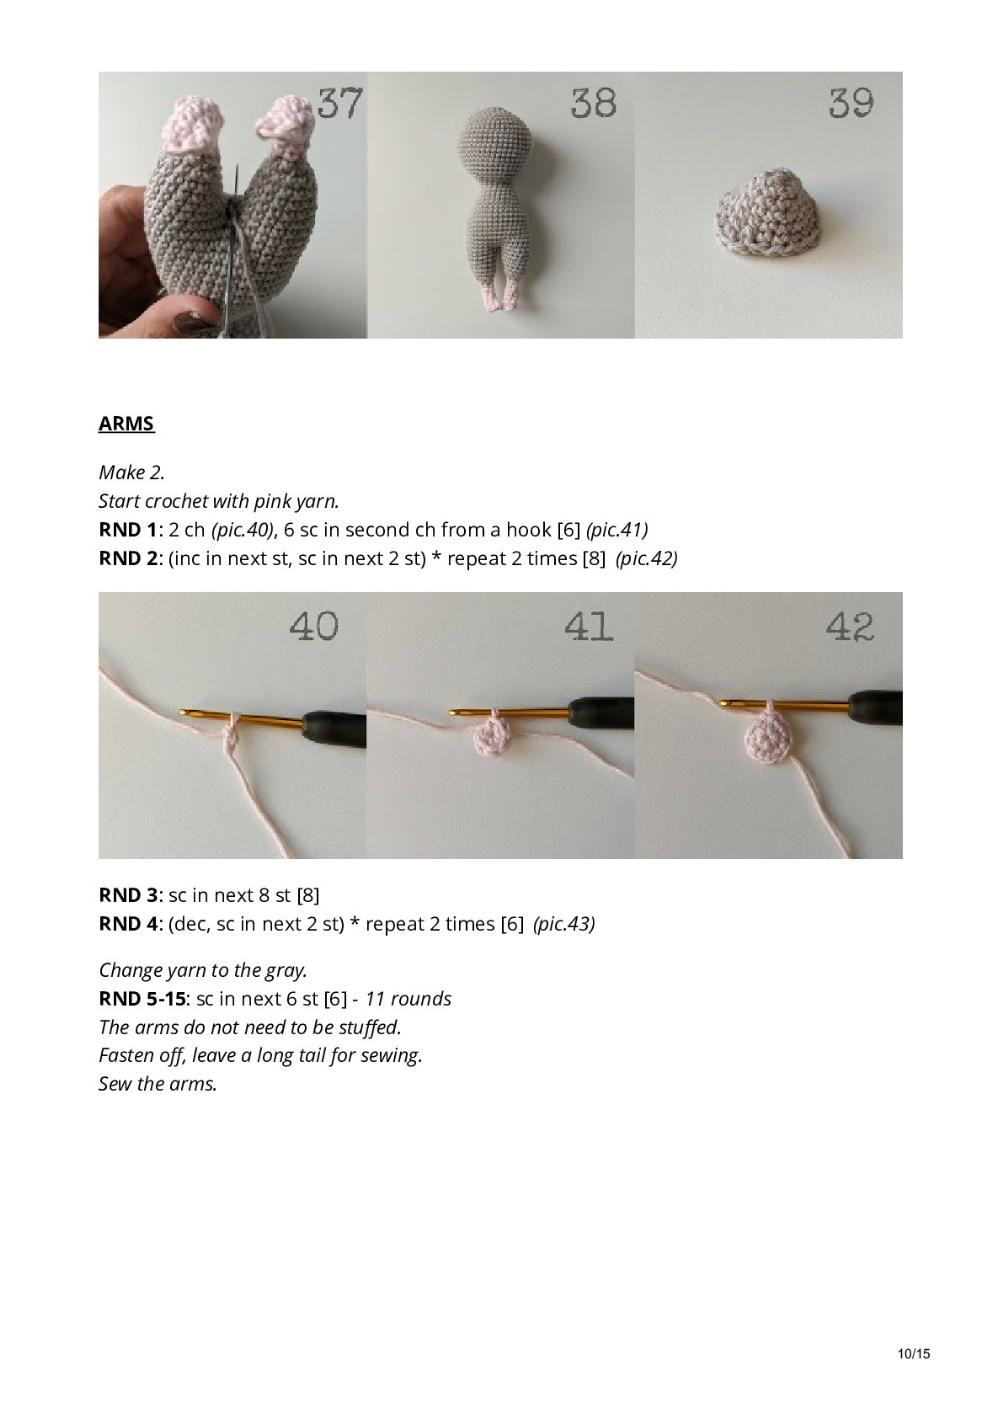 Little crochet mouse FREE PATTERN